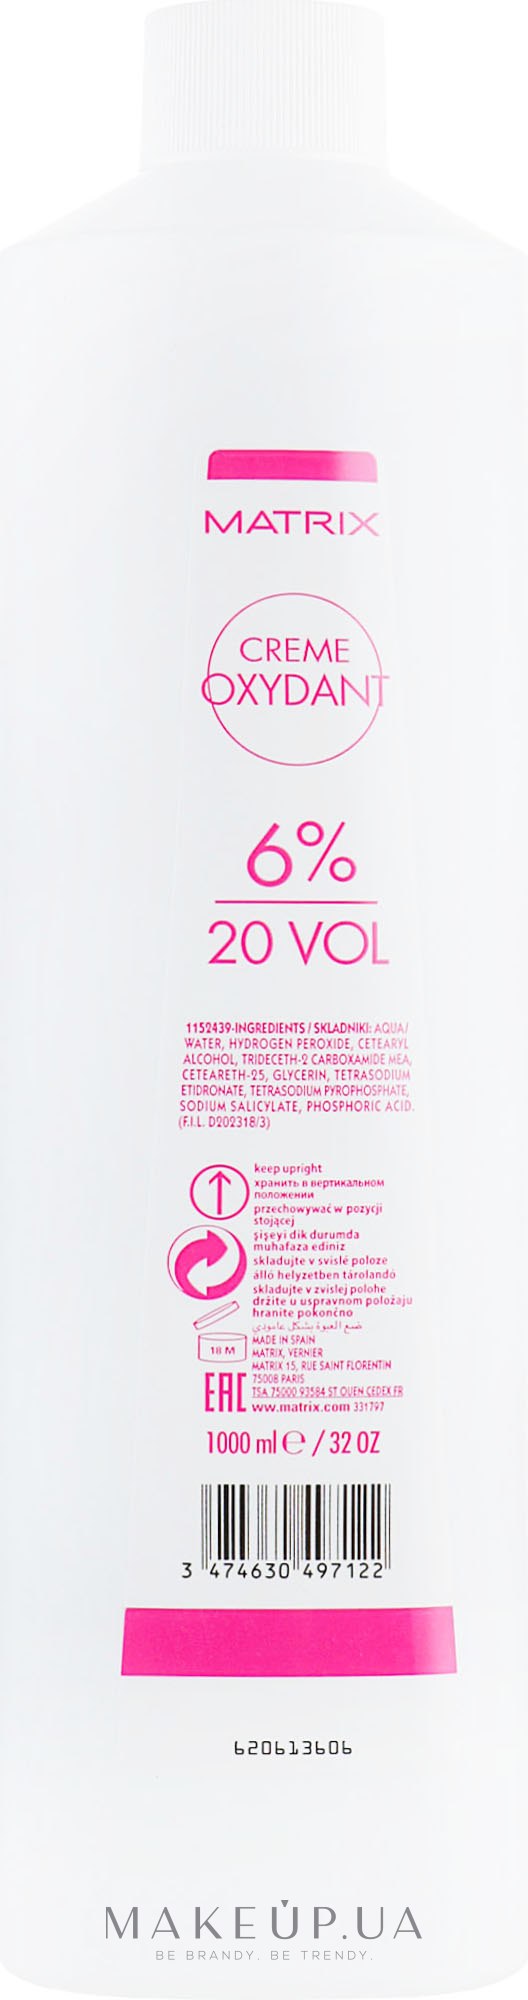 Крем-оксидант - Matrix Cream Oxydant 20 Vol. 6 % — фото 1000ml